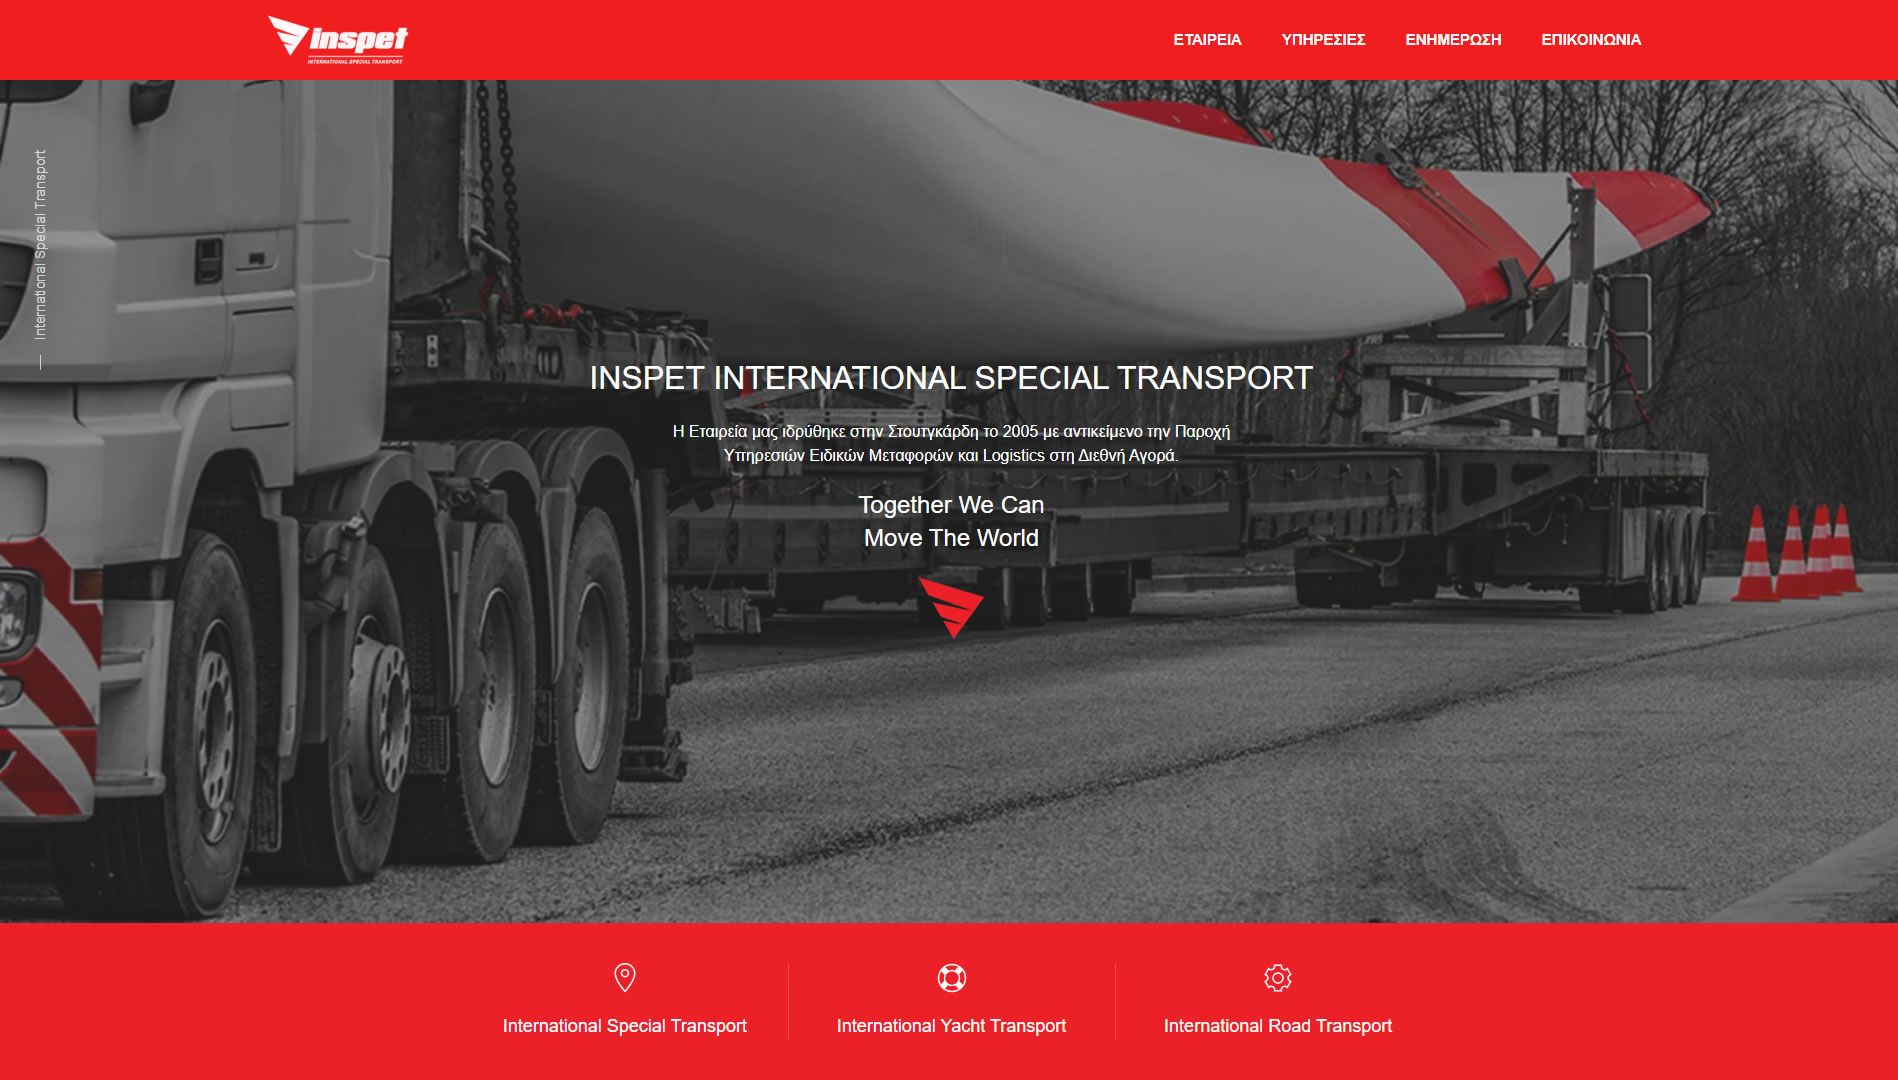 Inspet International Special Transport